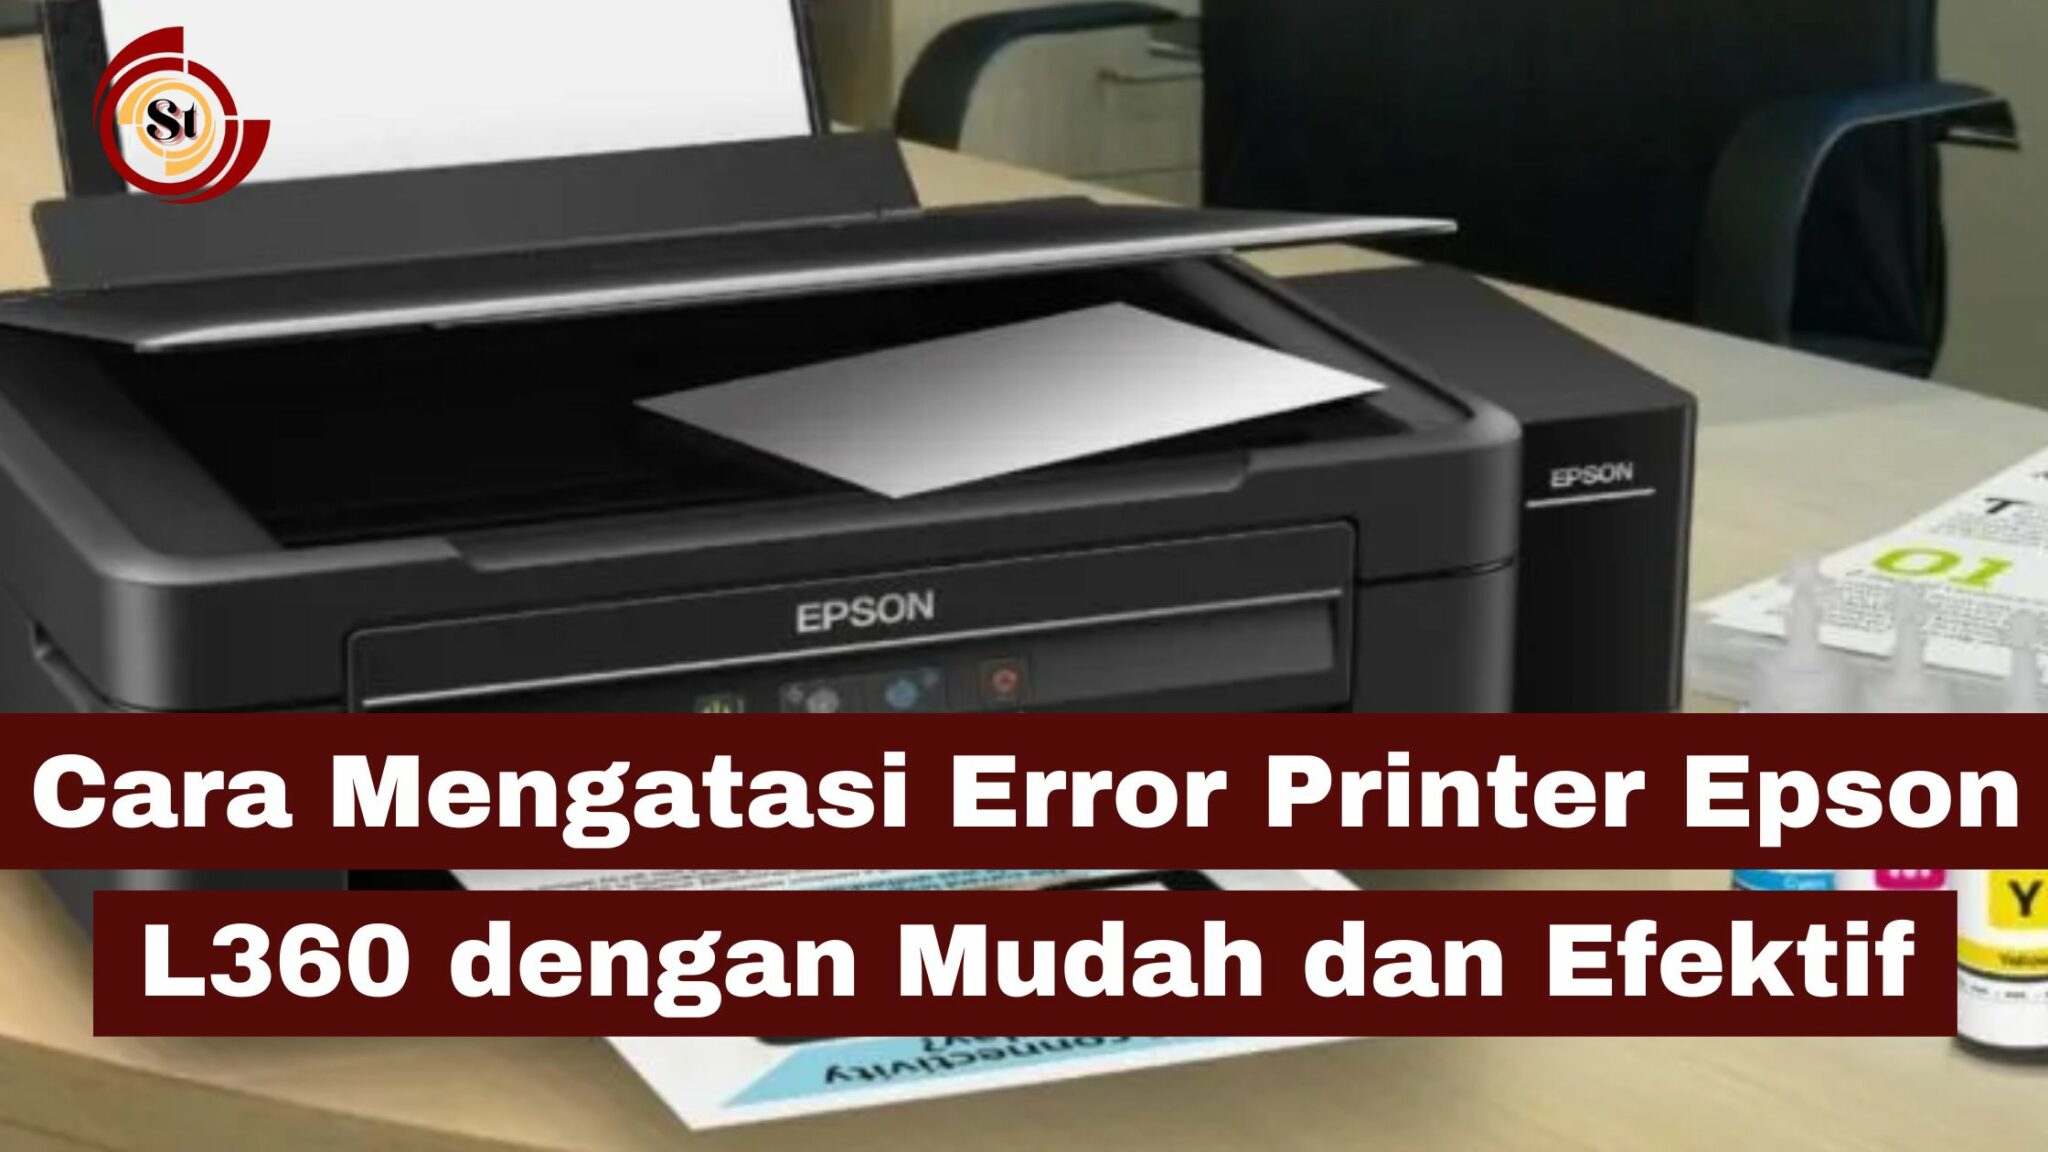 Cara Mengatasi Error Printer Epson L360 Dengan Mudah Dan Efektif ⋆ Simaktekno 2635